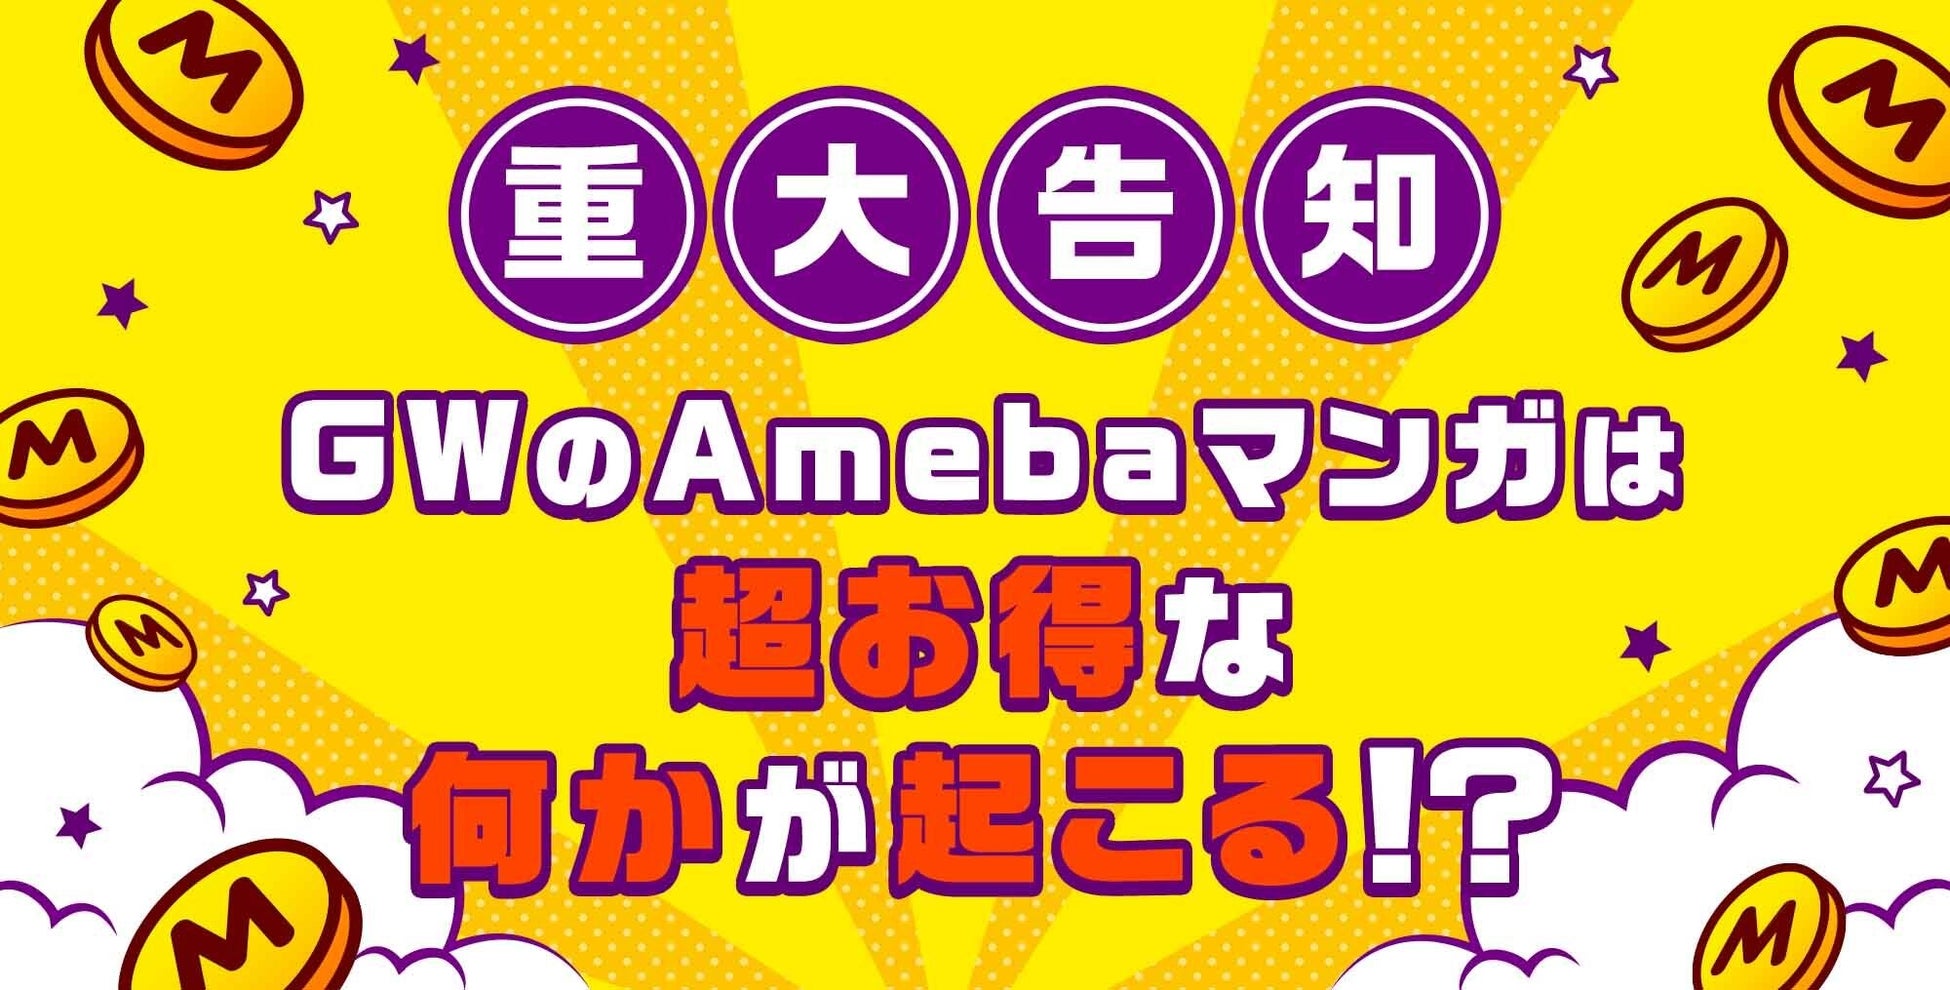 『ダンジョン飯』『陰の実力者になりたくて』など、KADOKAWAの人気作品がAmebaマンガで無料で読めるキャンペーンが本日5/1より開始